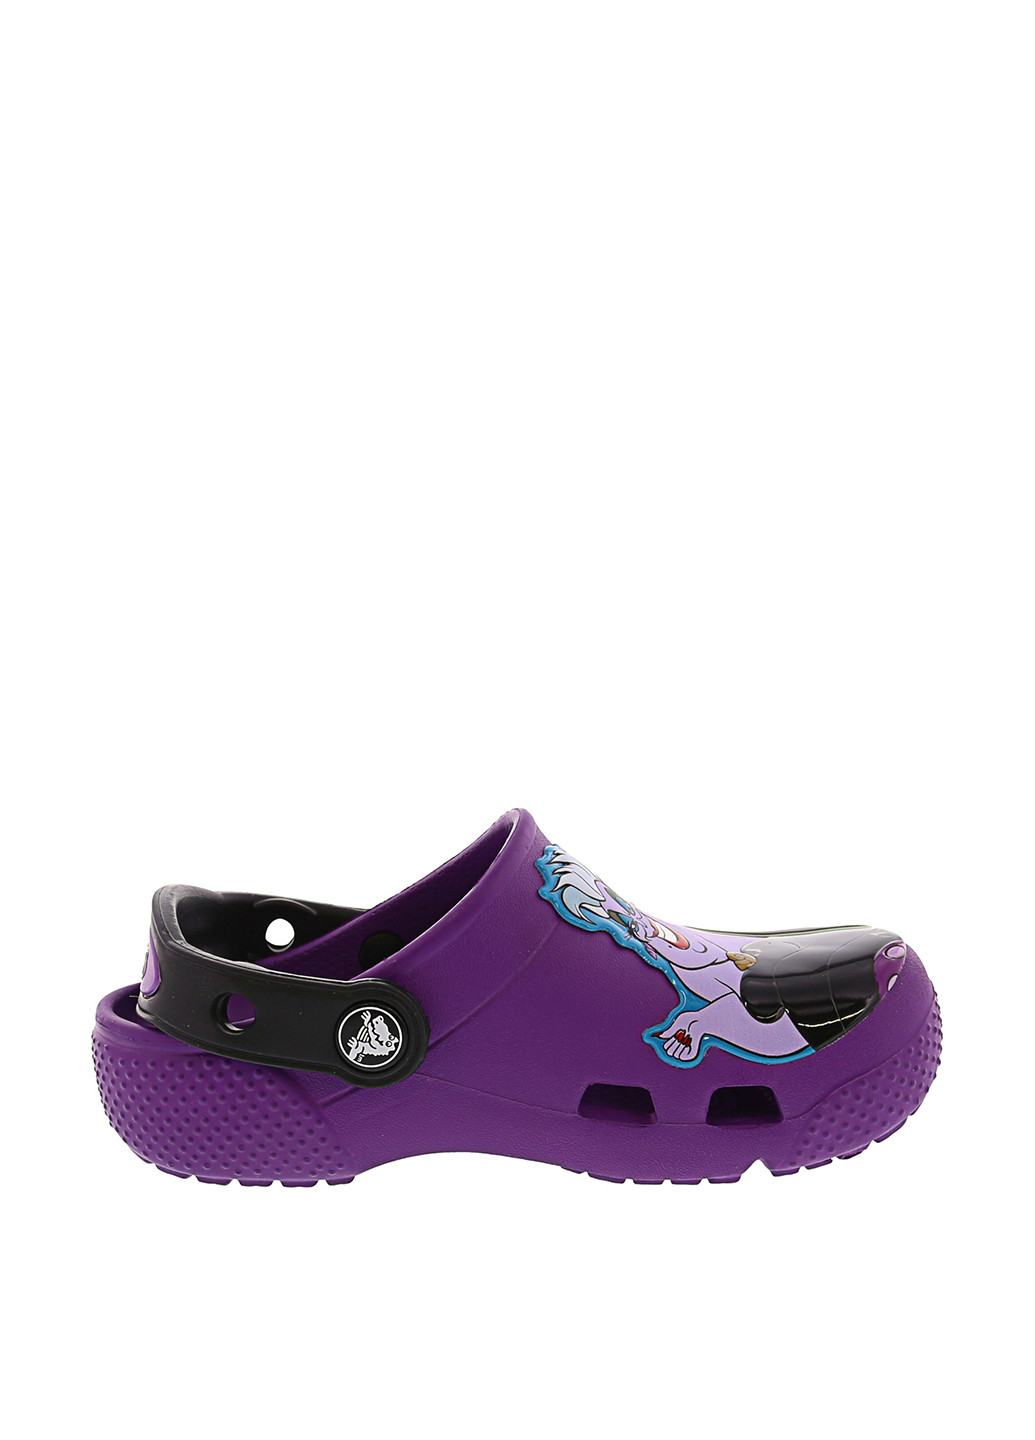 Фиолетовые сабо Crocs